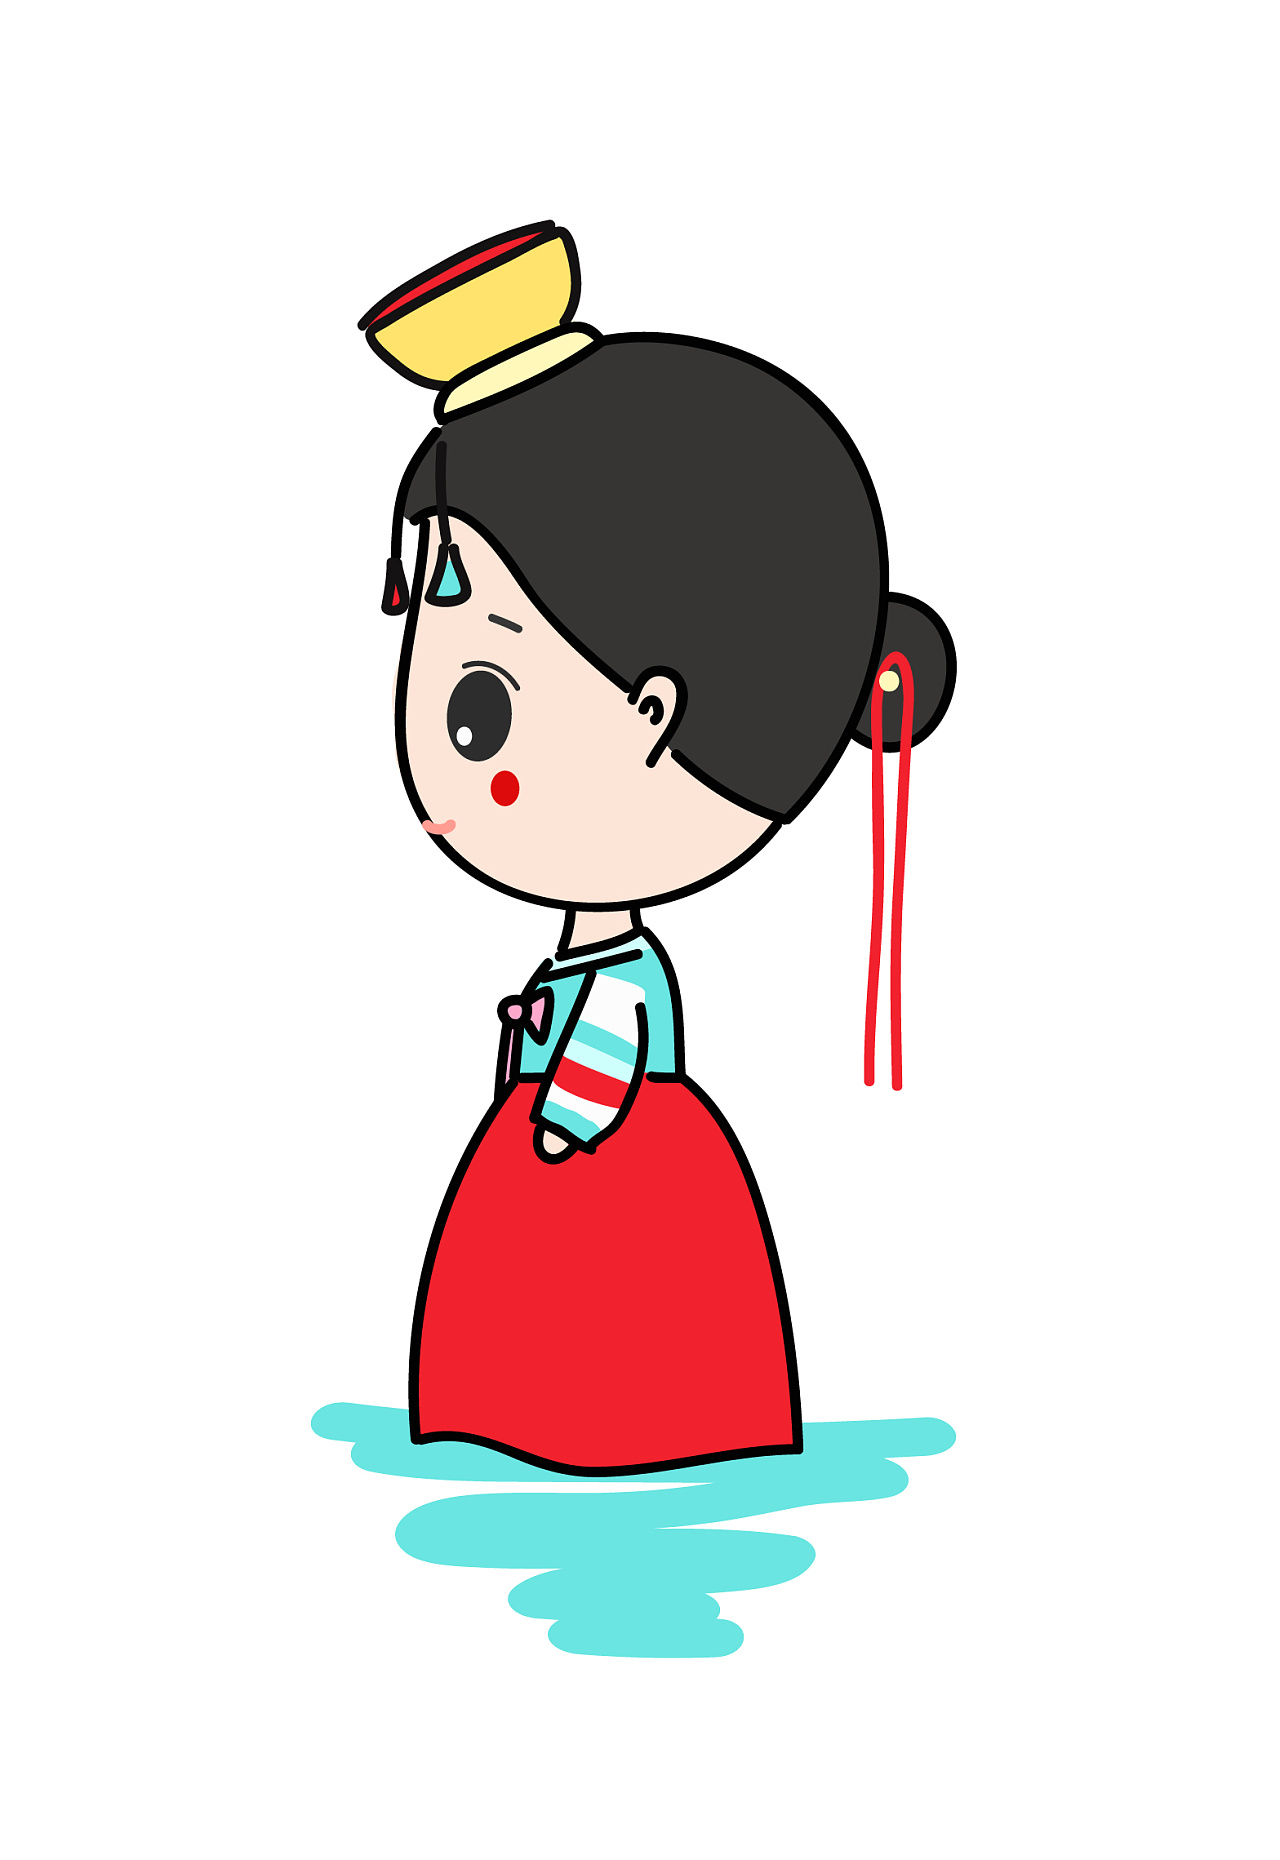 朝鲜族小姑娘卡通图片图片